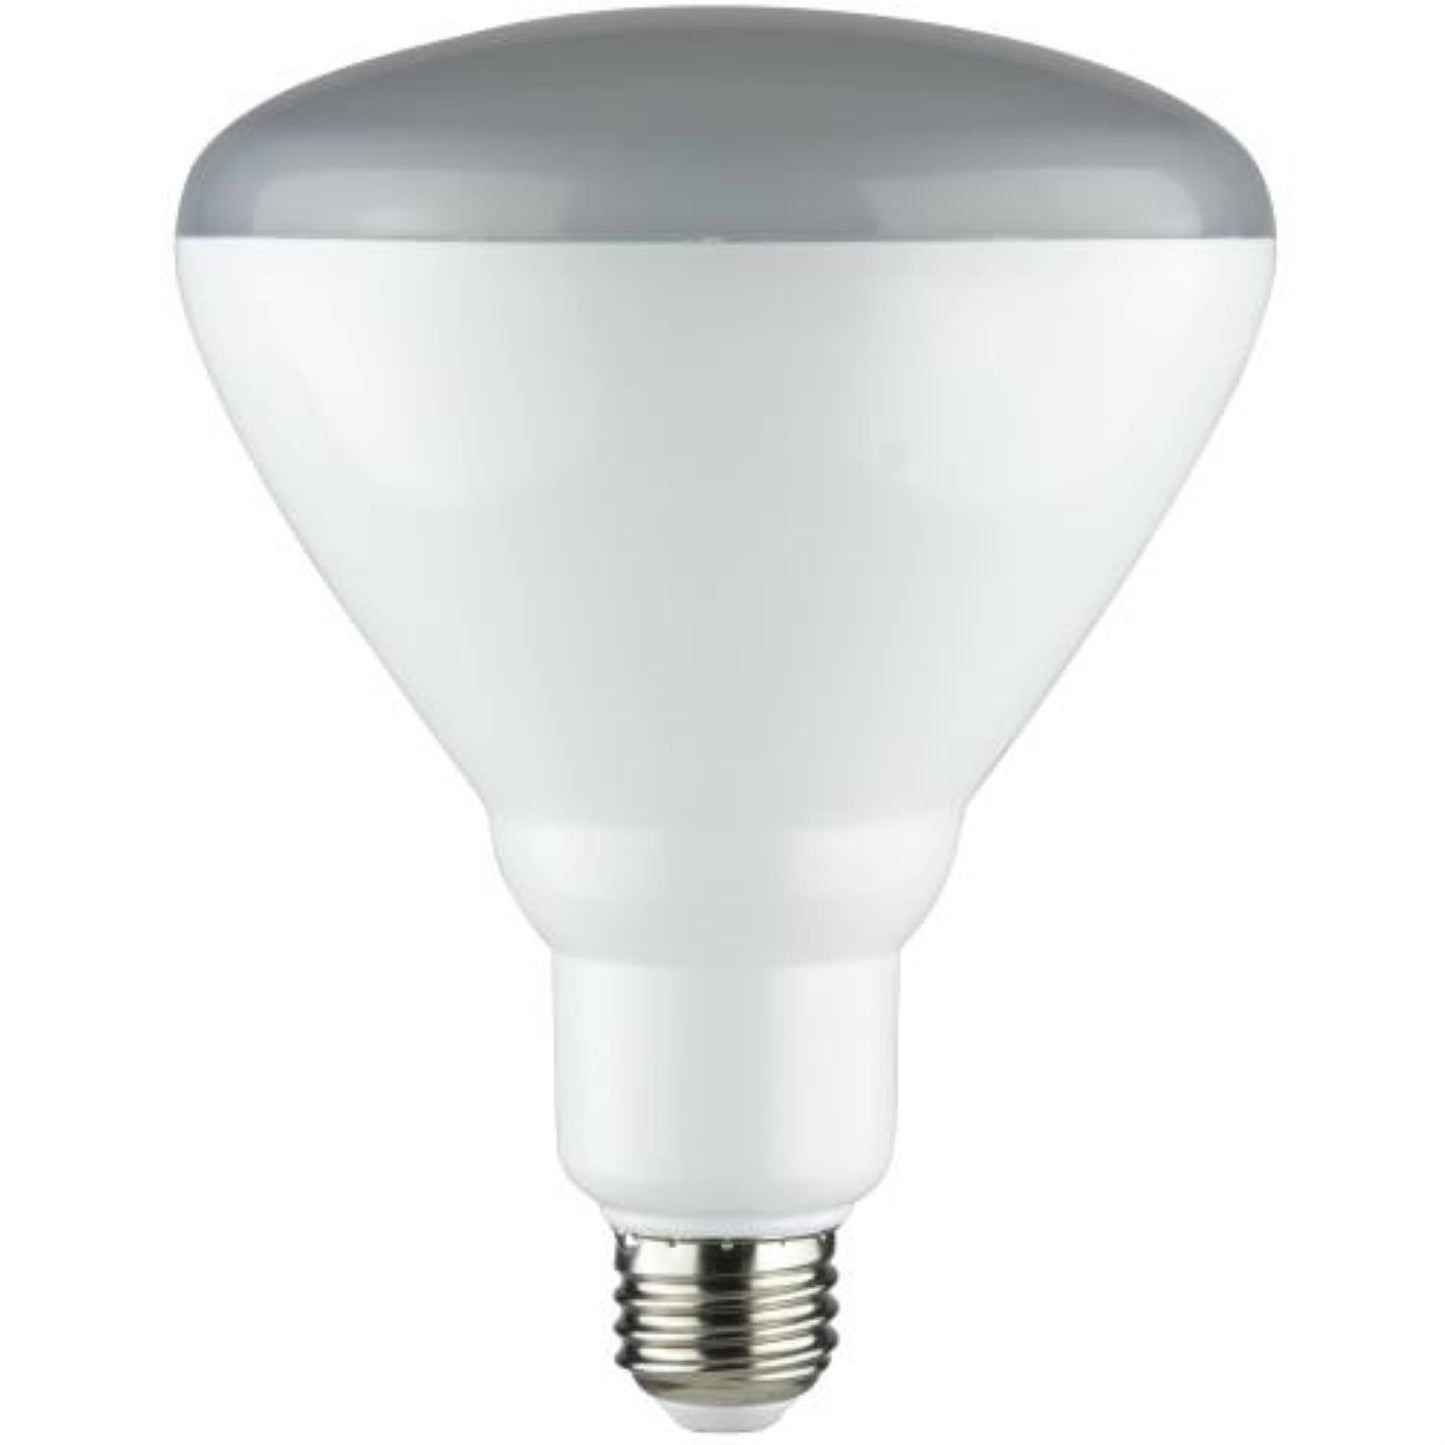 Sunlite LED 17.5 Watt Dimmable BR40 Reflector 2700K Warm White 1100 Lumens Light Bulb